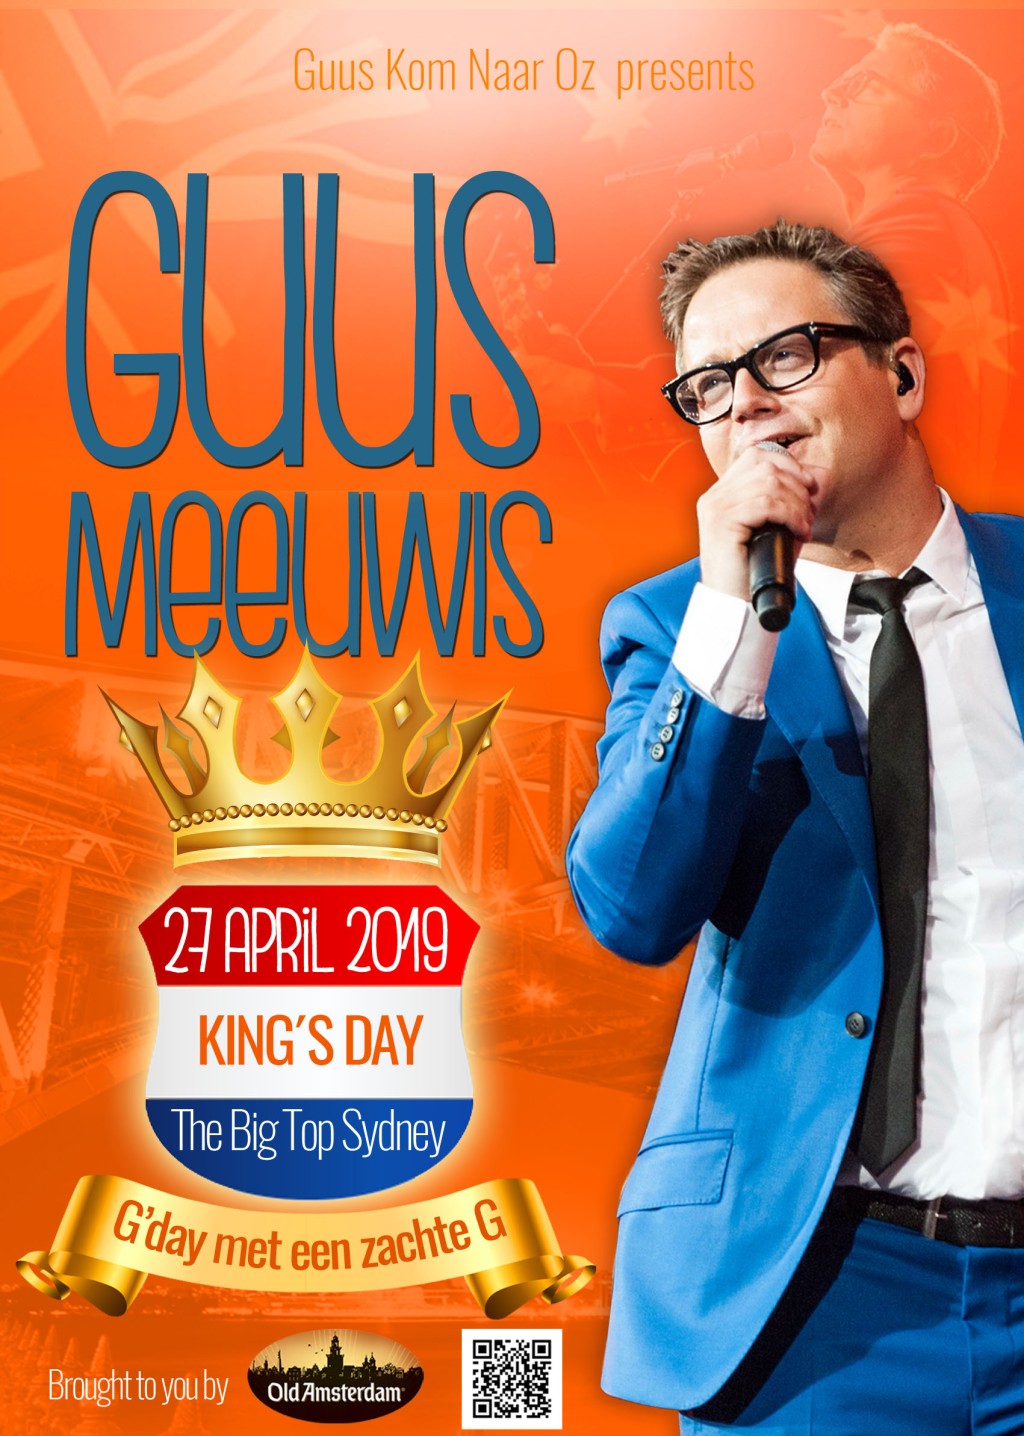 Guus Meeuwis in Sydney for Koningsdag 2019